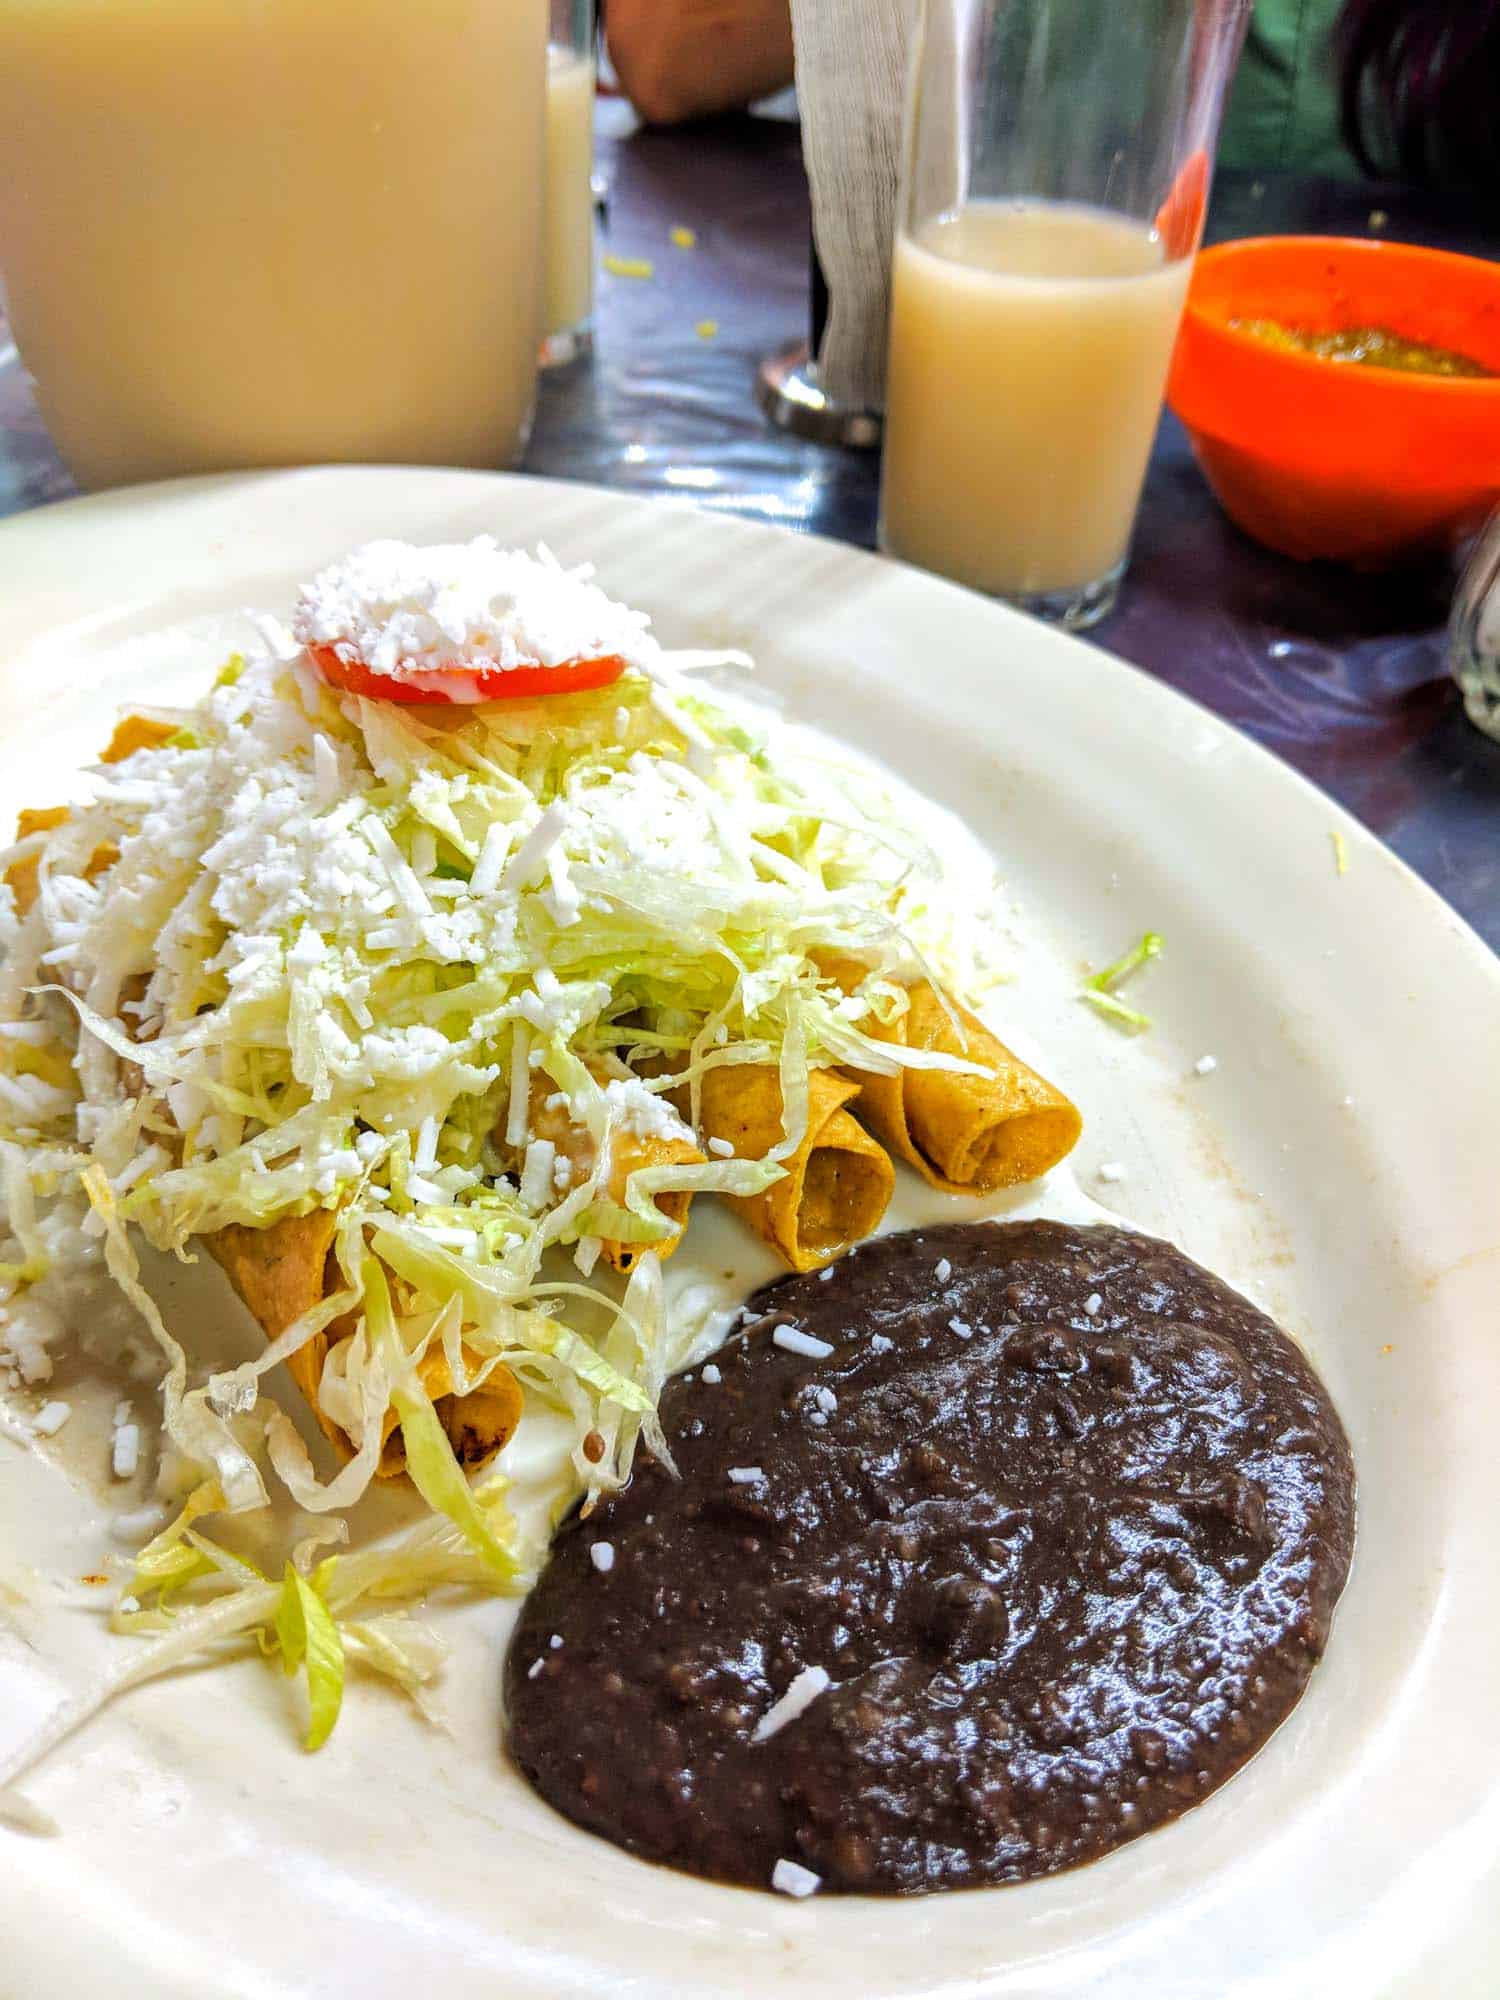 Tacos dorados from Mexico City, known as tacos fritos in Honduras.